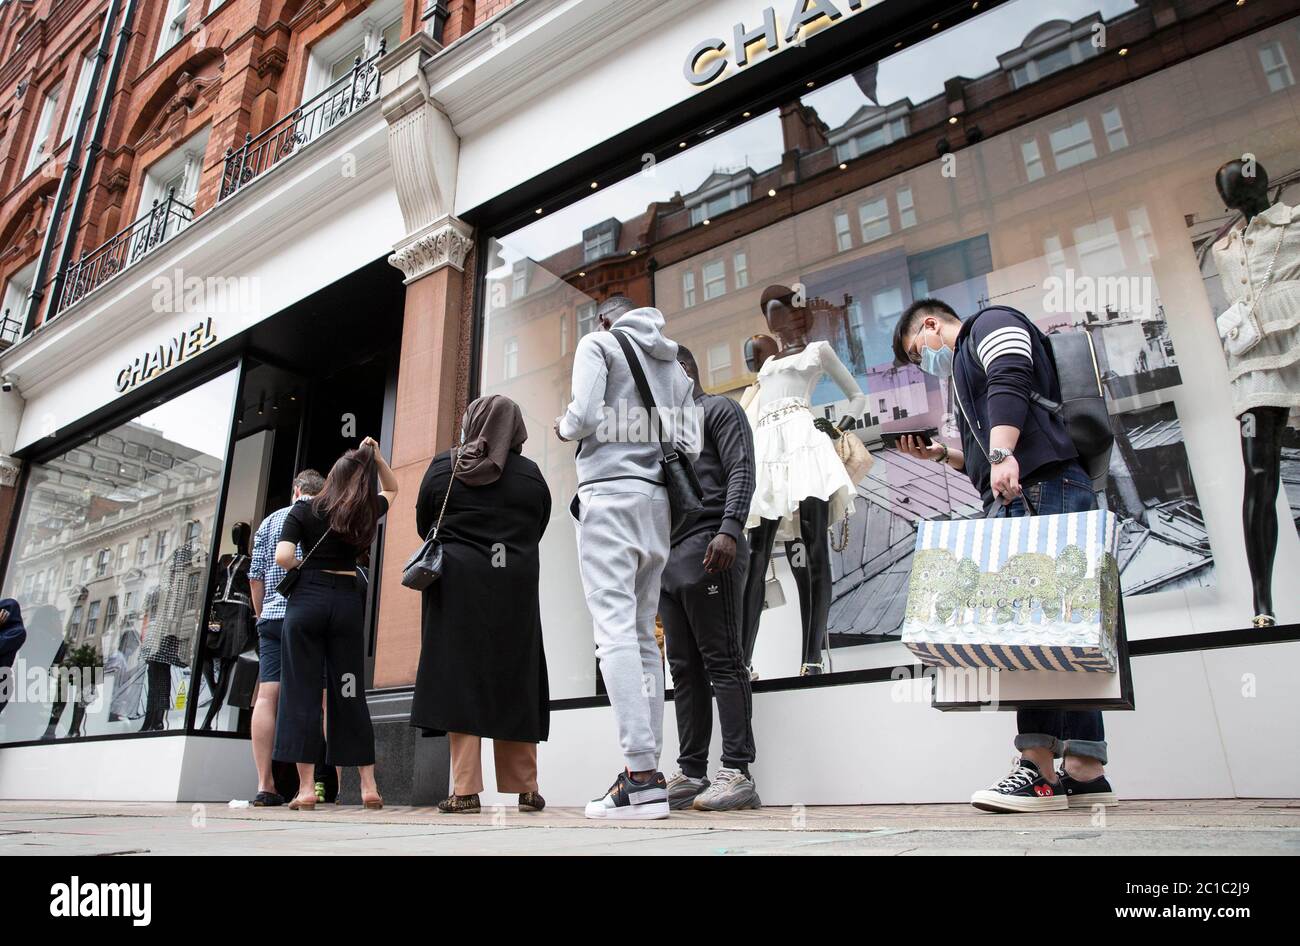 Allgemeine Ansichten von Käufern außerhalb von Chanel in der Sloane Street heute, da in der Gegend mehr als drei Viertel der Geschäfte nach monatelanger Planung wieder geöffnet werden. Stockfoto